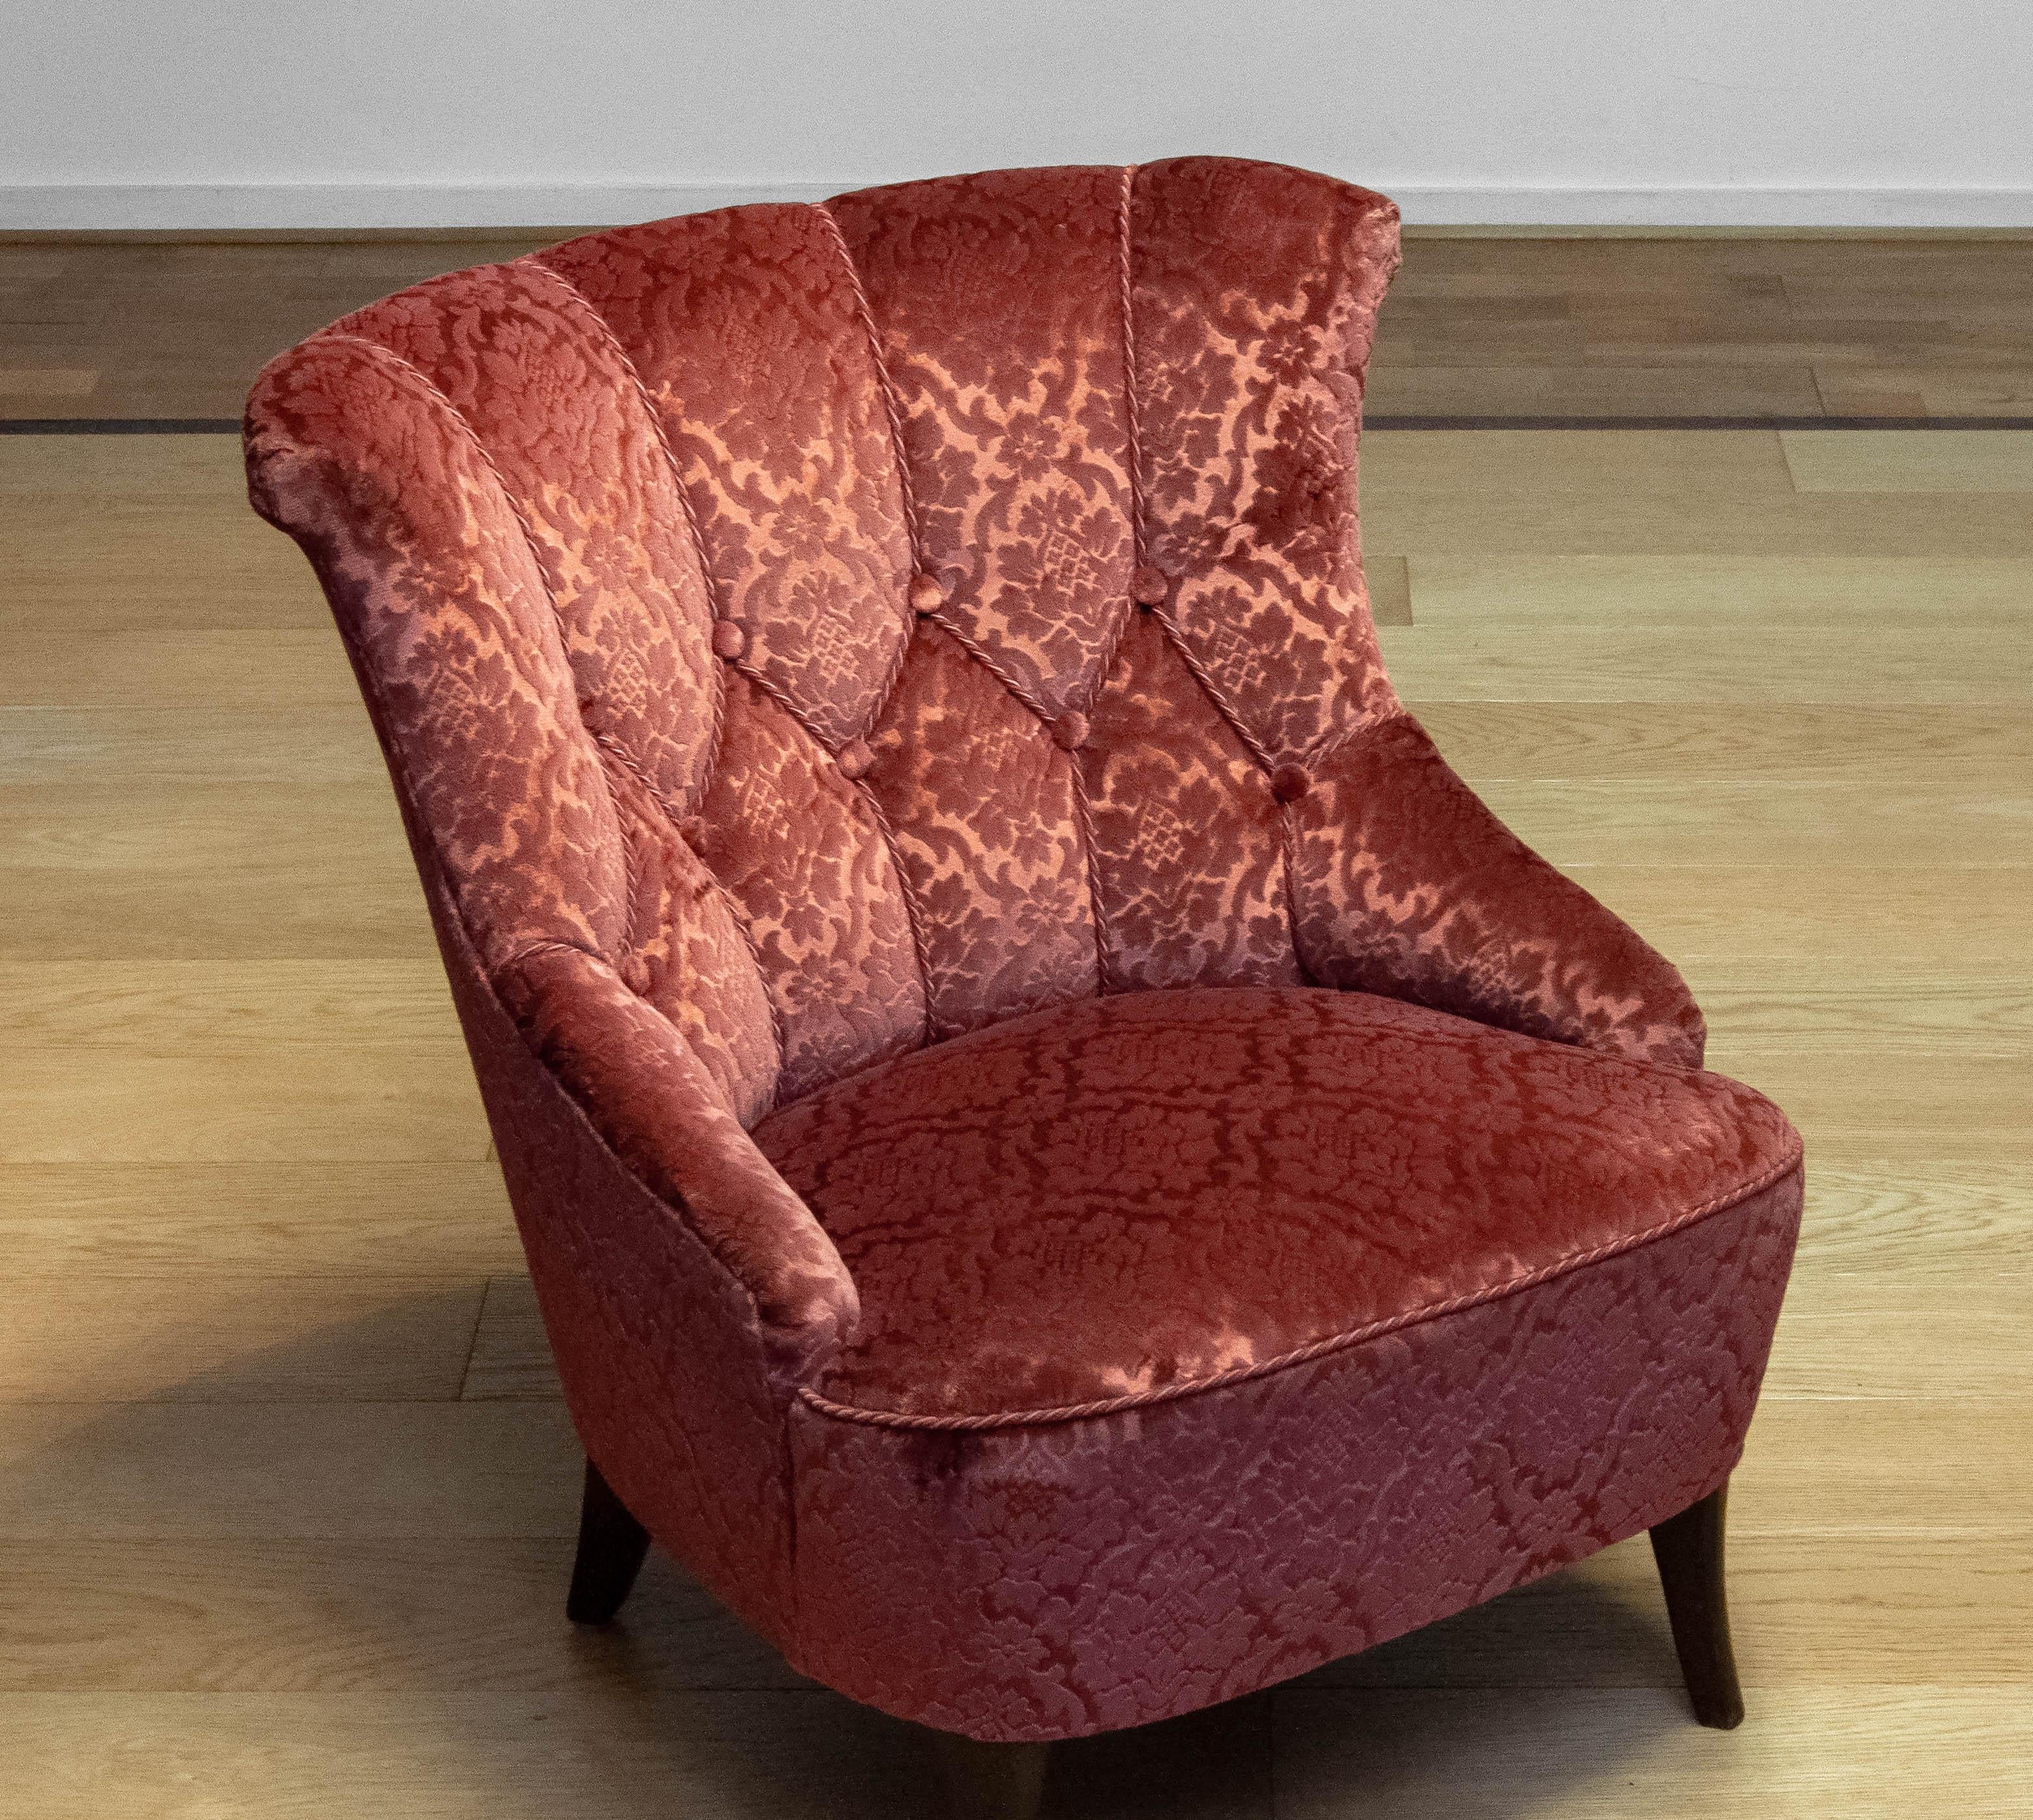 Magnifique chaise Napoléon III (scandinave).
Cette chaise a été entièrement retapissée avec le velours jacquard brique ton sur ton des années 70. Les sangles et les ressorts sont en bon état.
Dans l'ensemble, la chaise est bien assise et supporte